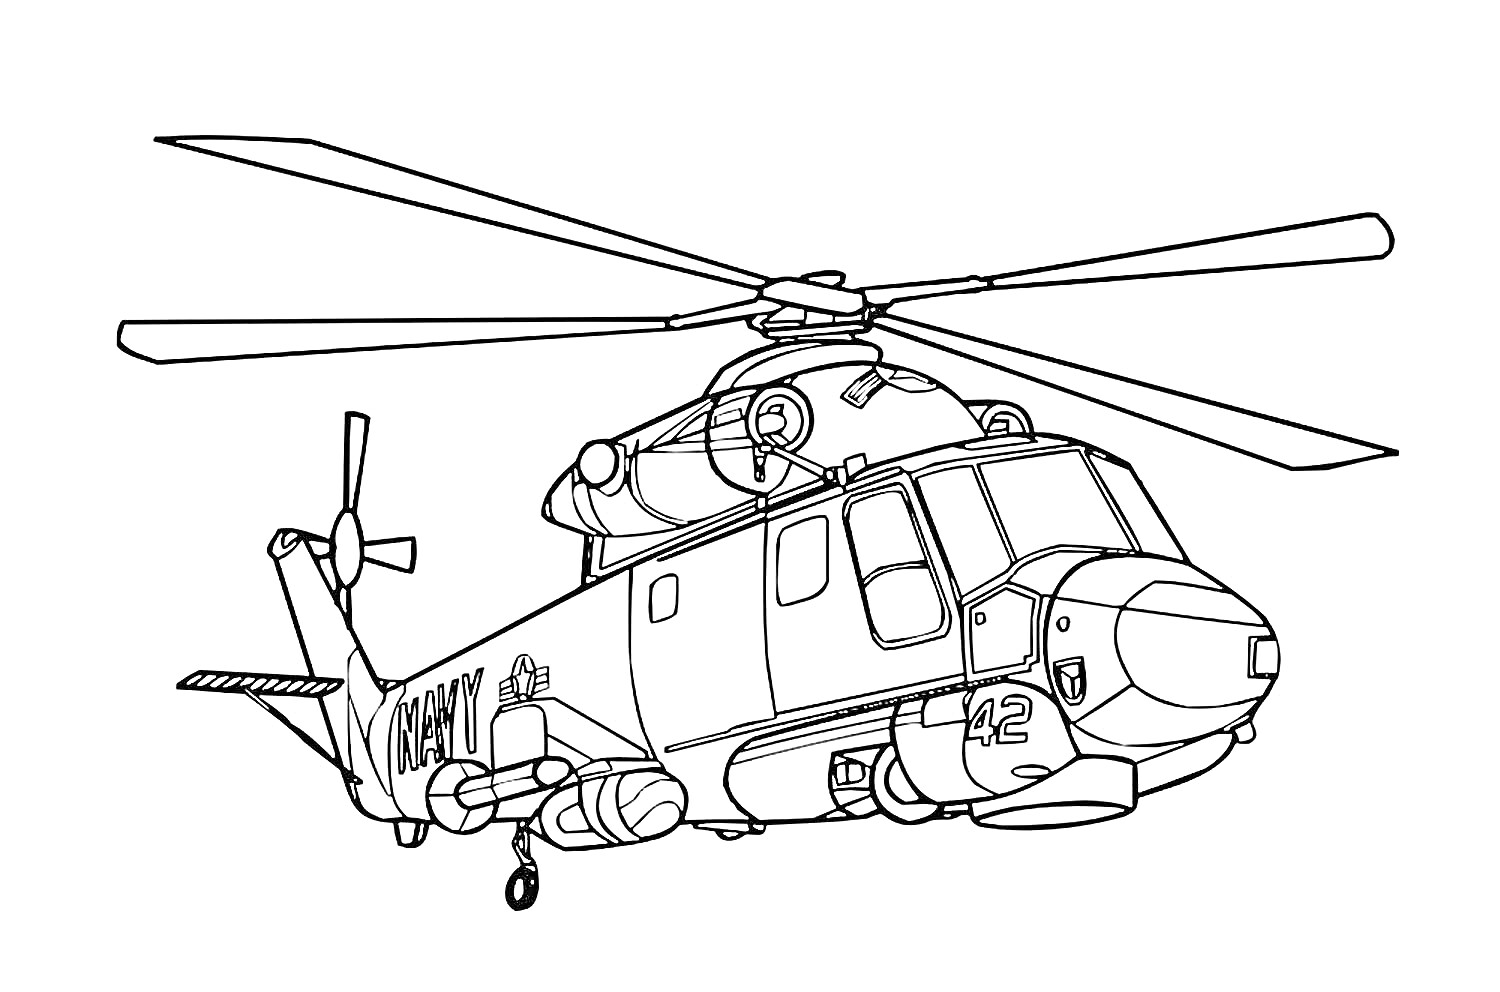 Вертолет с деталями корпуса и ротора, боковой вид, военная тематика